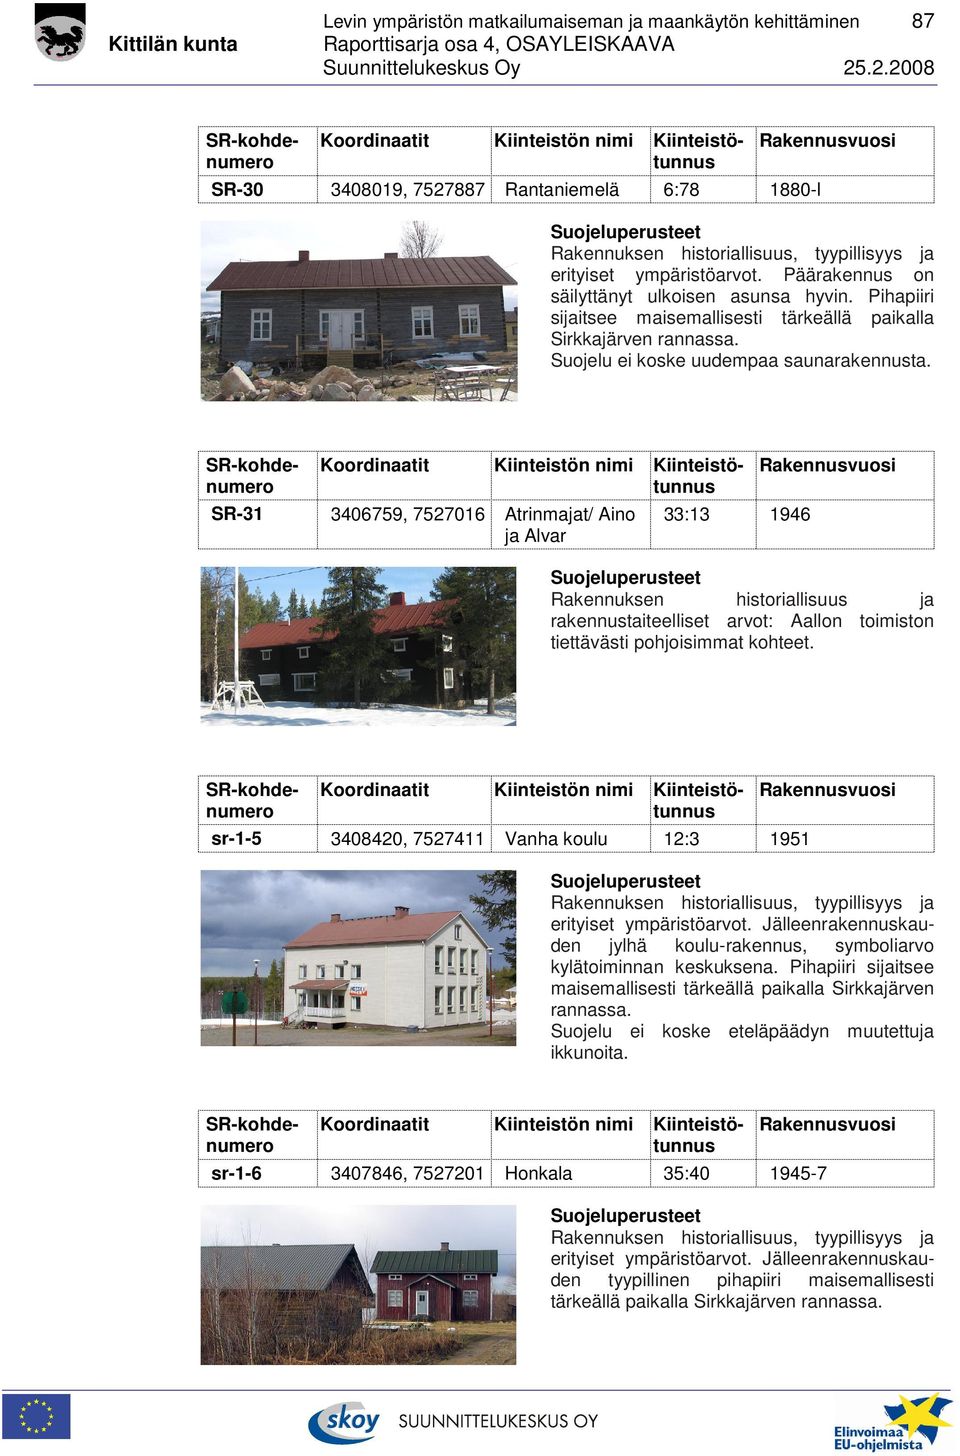 SR-31 3406759, 7527016 Atrinmajat/ Aino ja Alvar 33:13 1946 Rakennuksen historiallisuus ja rakennustaiteelliset arvot: Aallon toimiston tiettävästi pohjoisimmat kohteet.